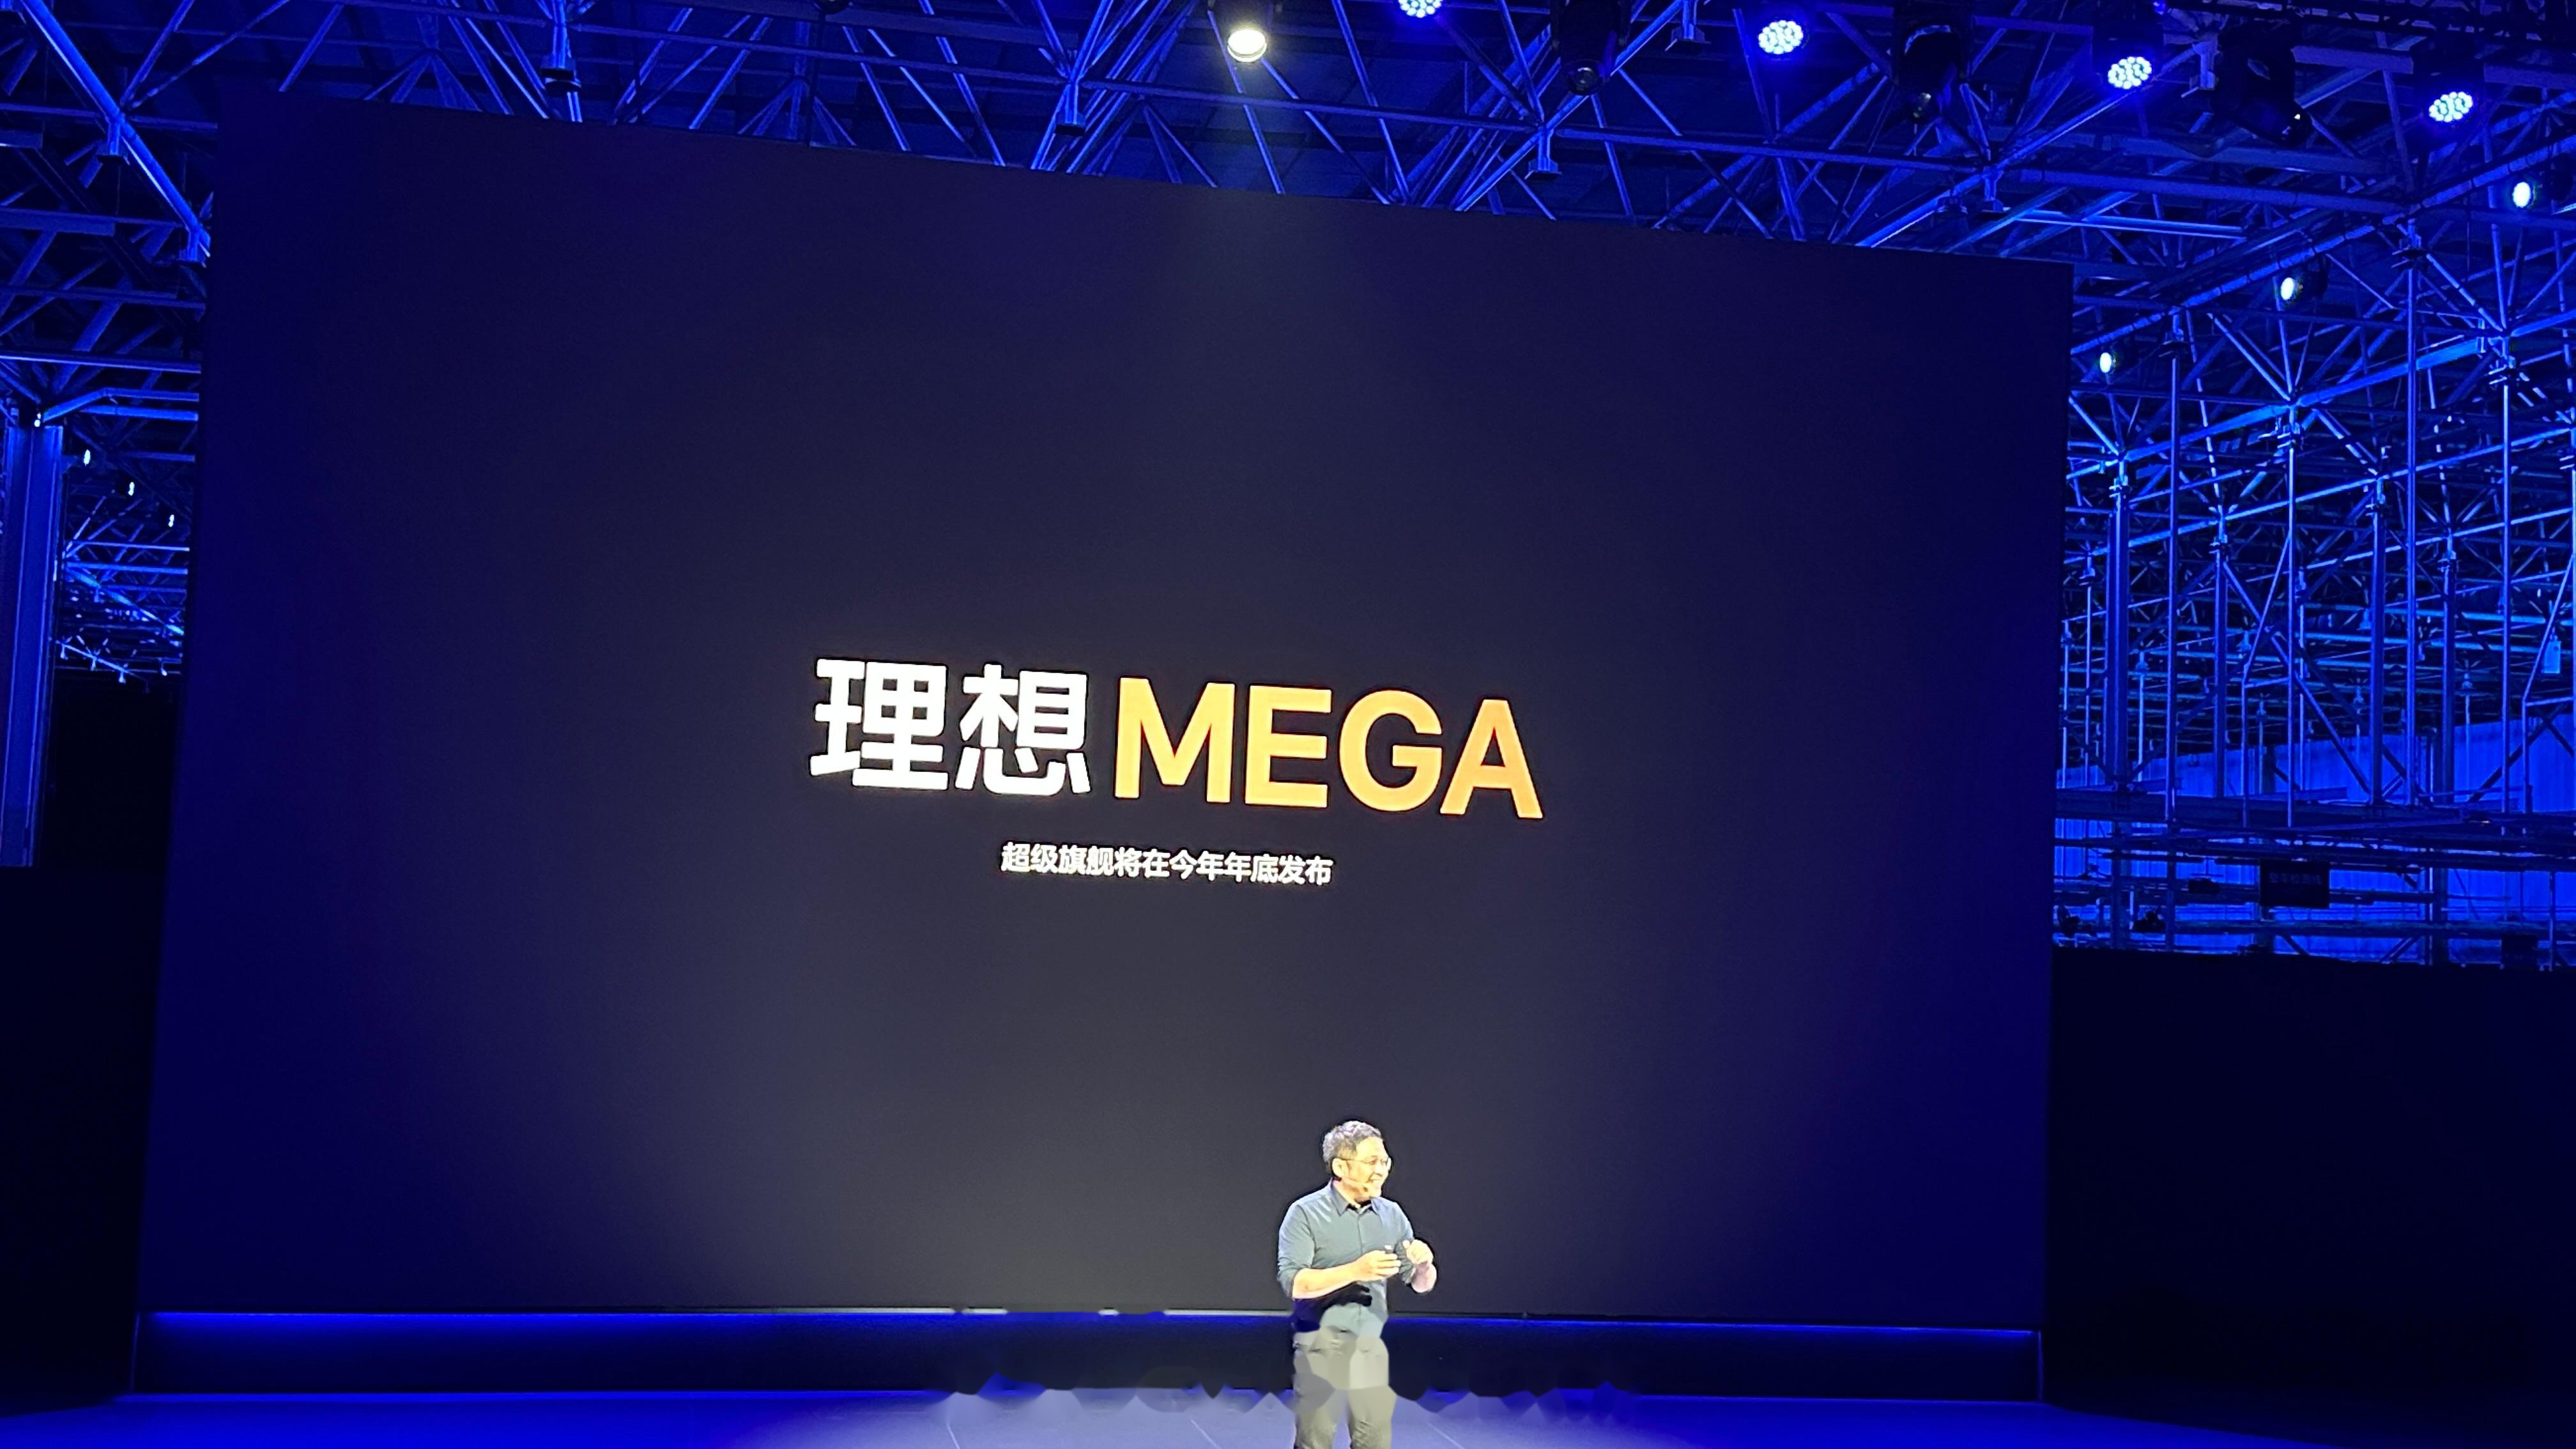 理想MEGA车展开启预售 预售价60万元以内_搜狐汽车_搜狐网